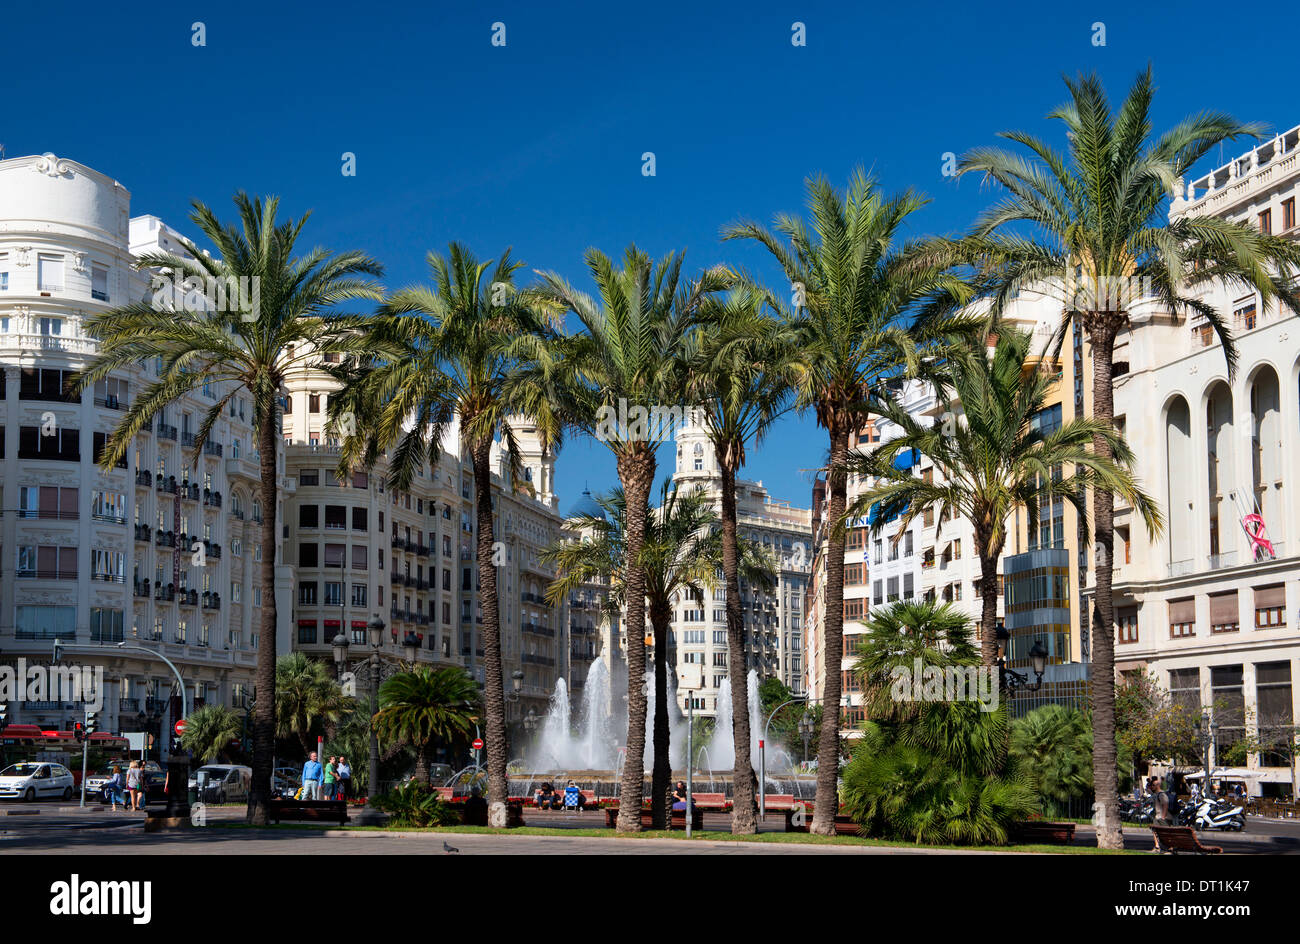 Gli alberi di palma, edifici alti e una fontana in Plaza del Ayuntamiento a Valencia Valenciana, Spagna, Europa Foto Stock